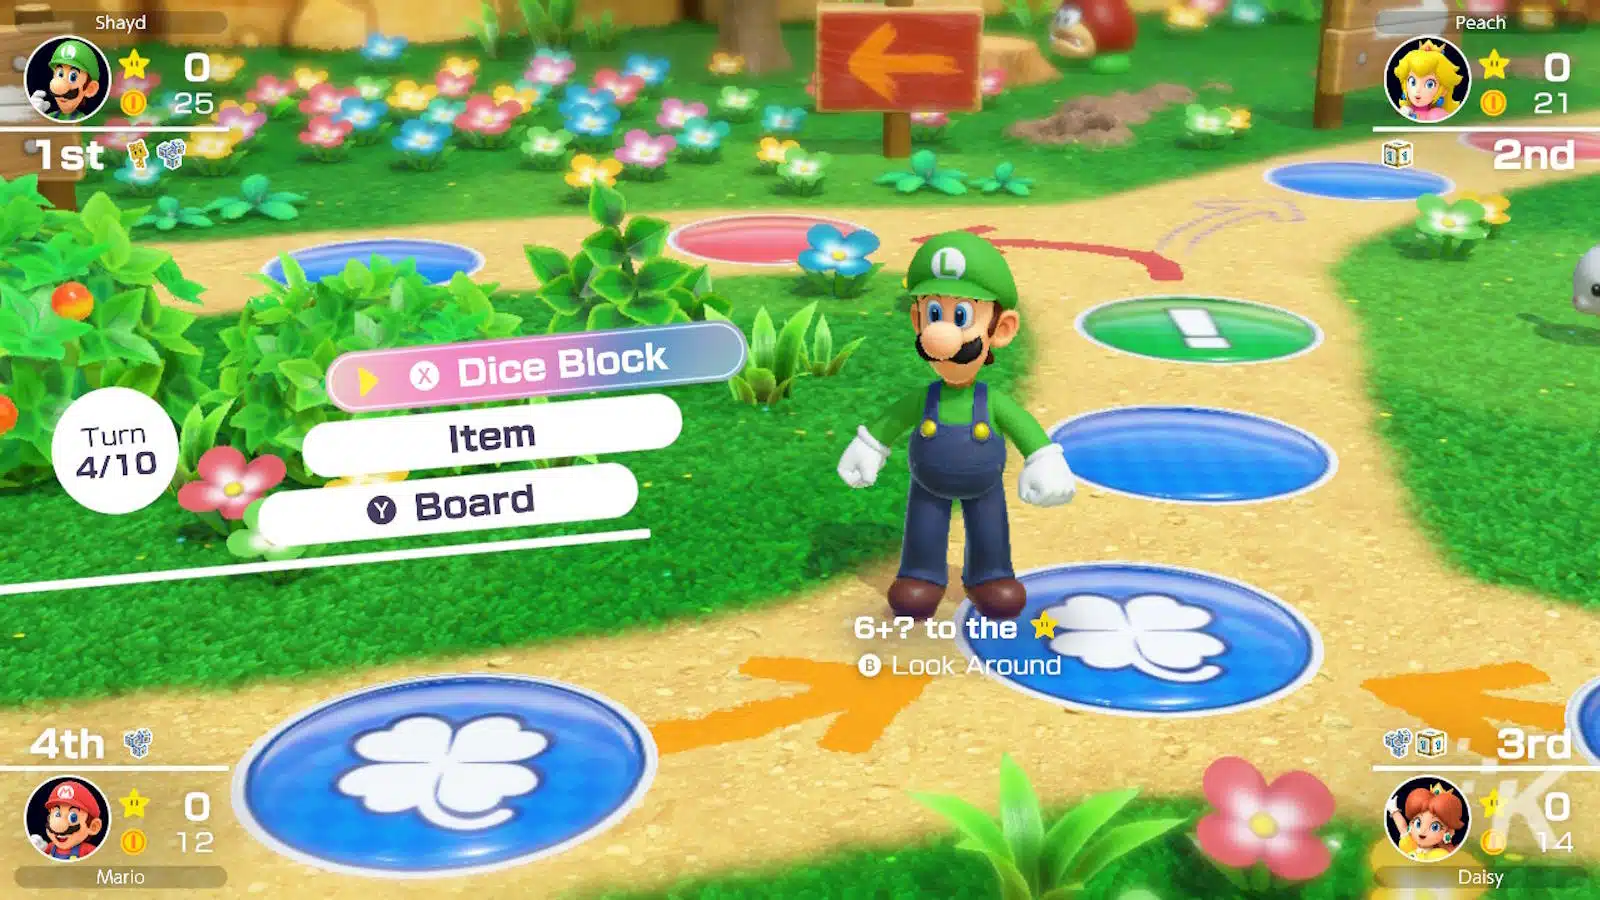 لقطة شاشة ملونة للعبة Mario Party تضم لويجي.